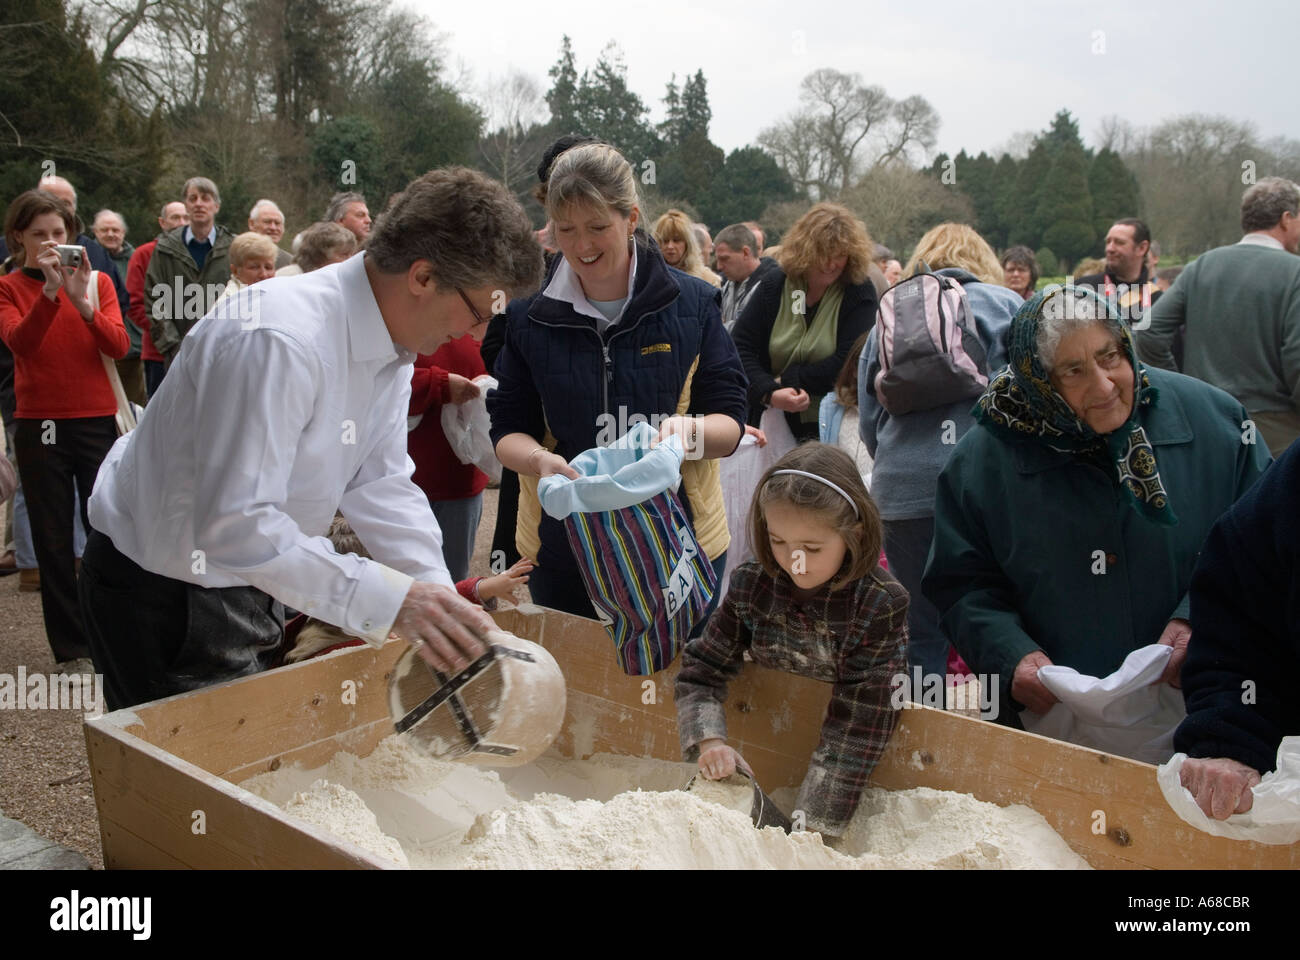 Tichborne Dole chaque année le Lady Day, le 25 mars Anthony Loudon distribuant de la farine dole. Tichborne, près d'Alresford, Hampshire Royaume-Uni. années 2007 2000 Banque D'Images